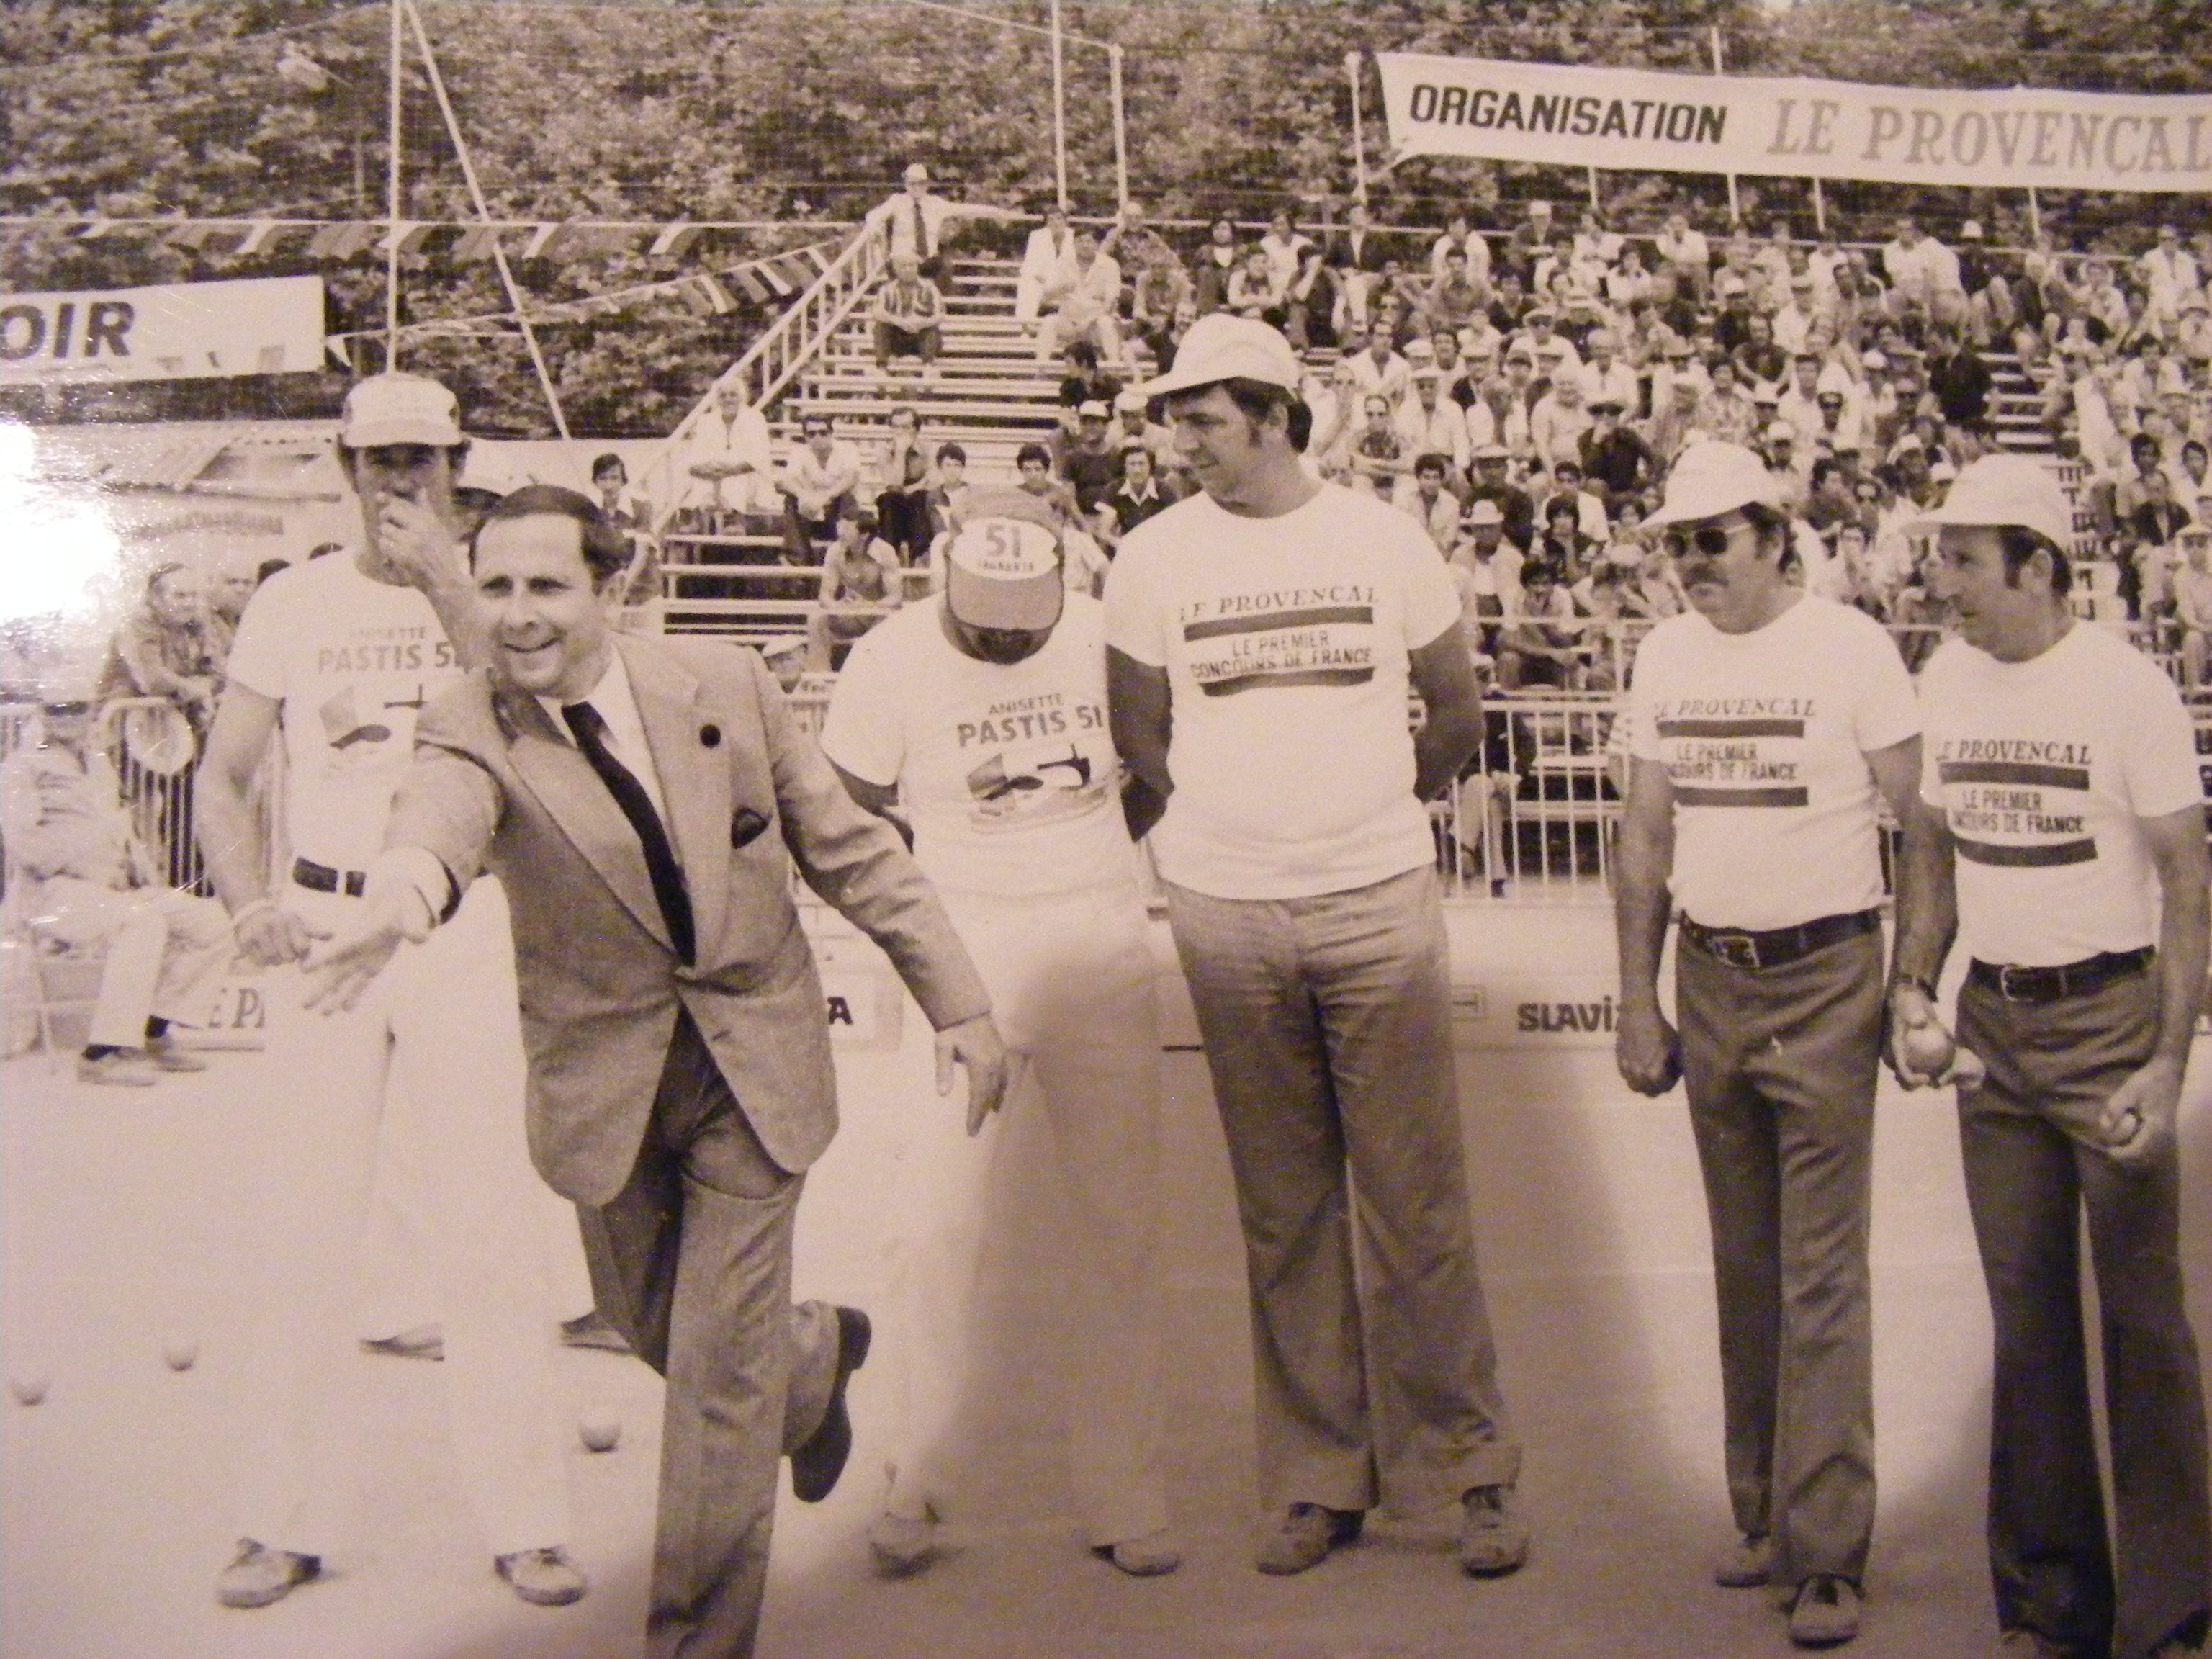 Demie finale du Provençal 1977 avec Dédé Salles et Antoine Matalana, grands favoris ils vont s'incliner face aux varois Allegre Baragatti et Tropini